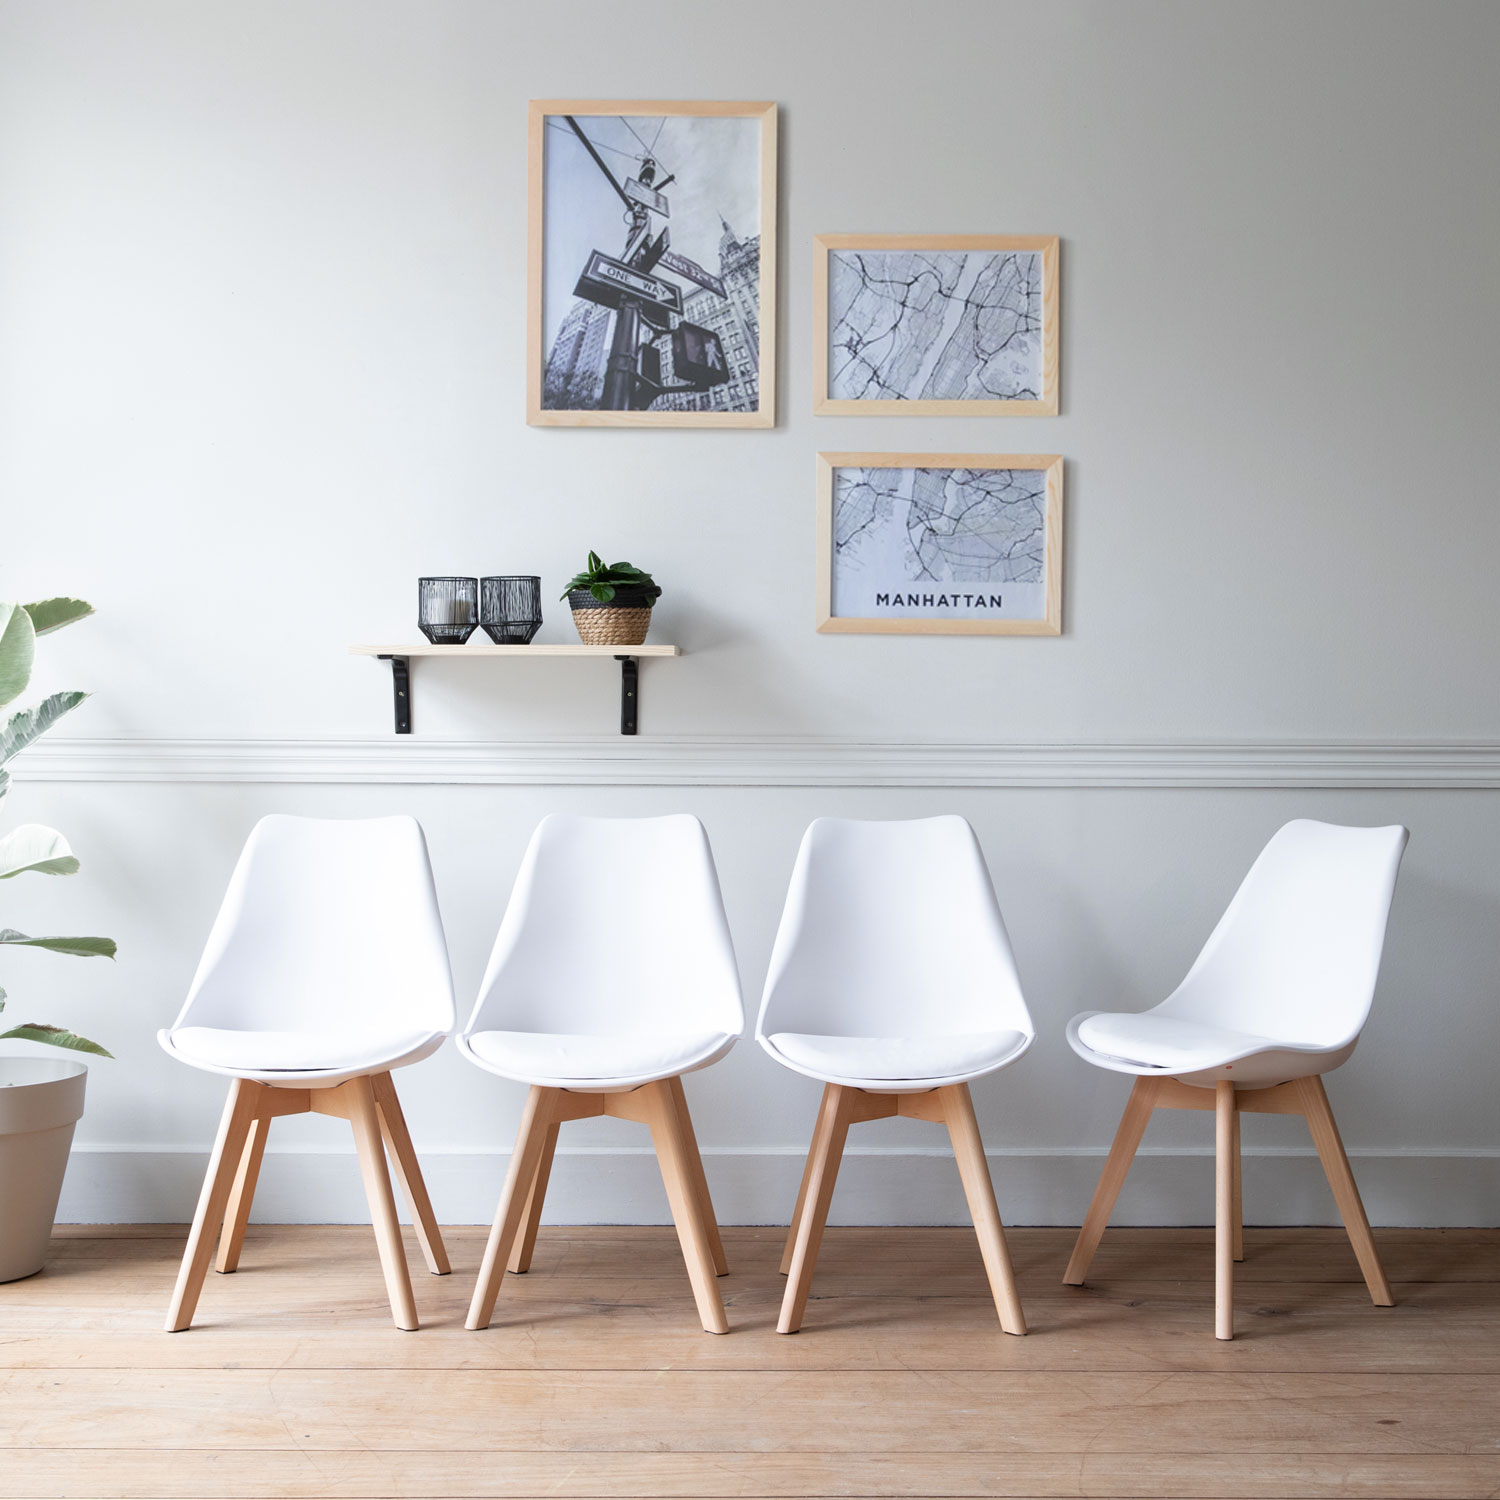 Lote de 4 sillas escandinavas NORA color blanco con cojín